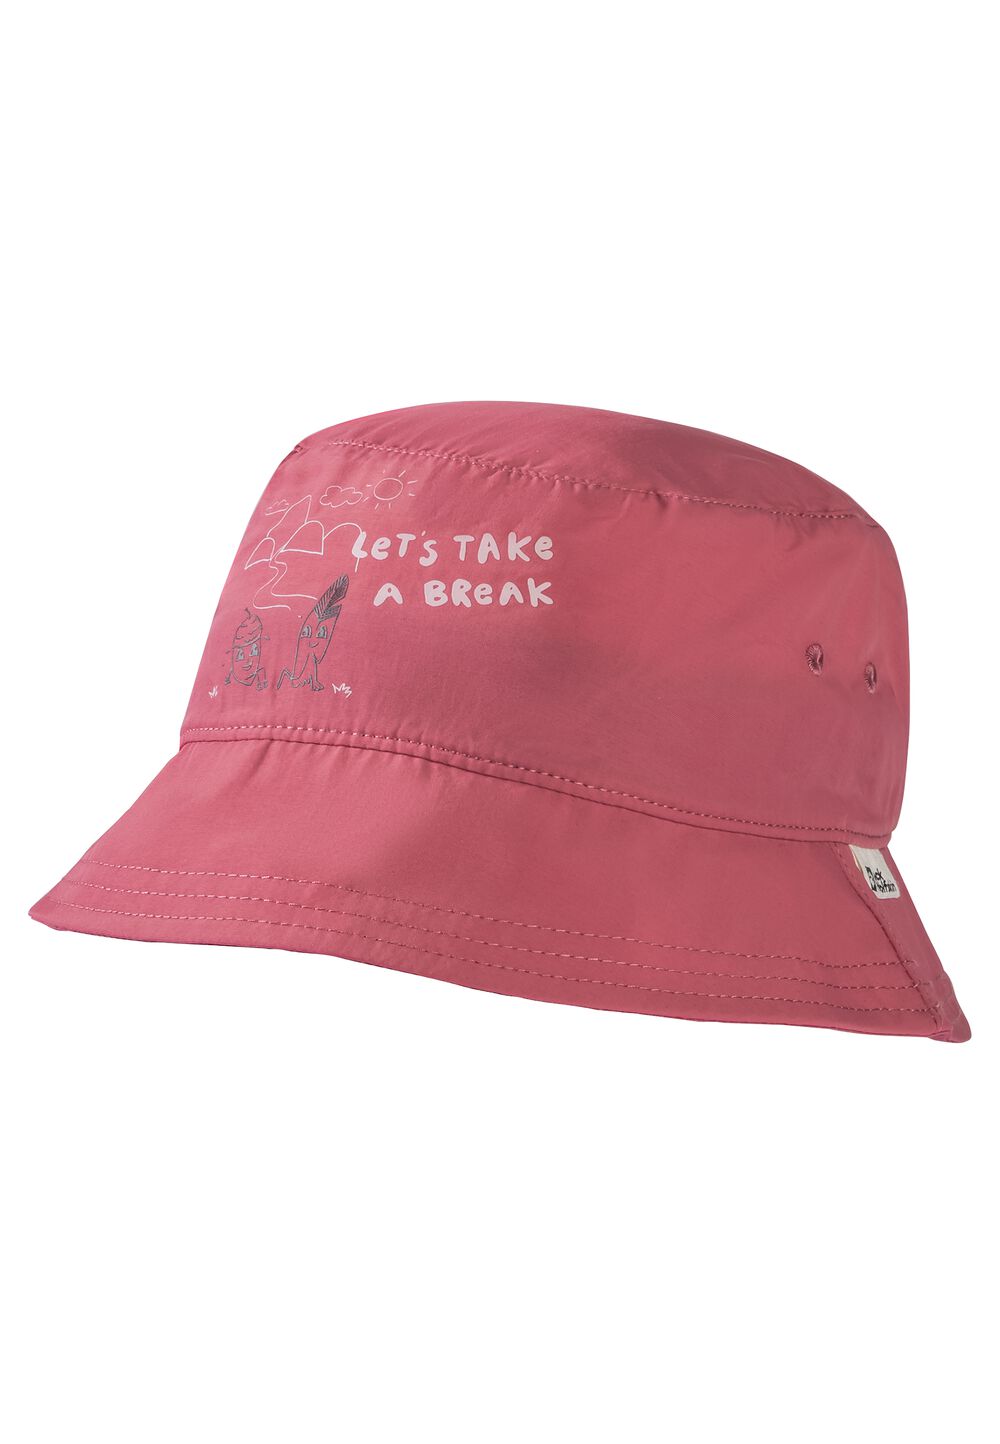 Jack Wolfskin AT Home Bucket Hat Kids Bucket hat kinderen S soft pink soft pink